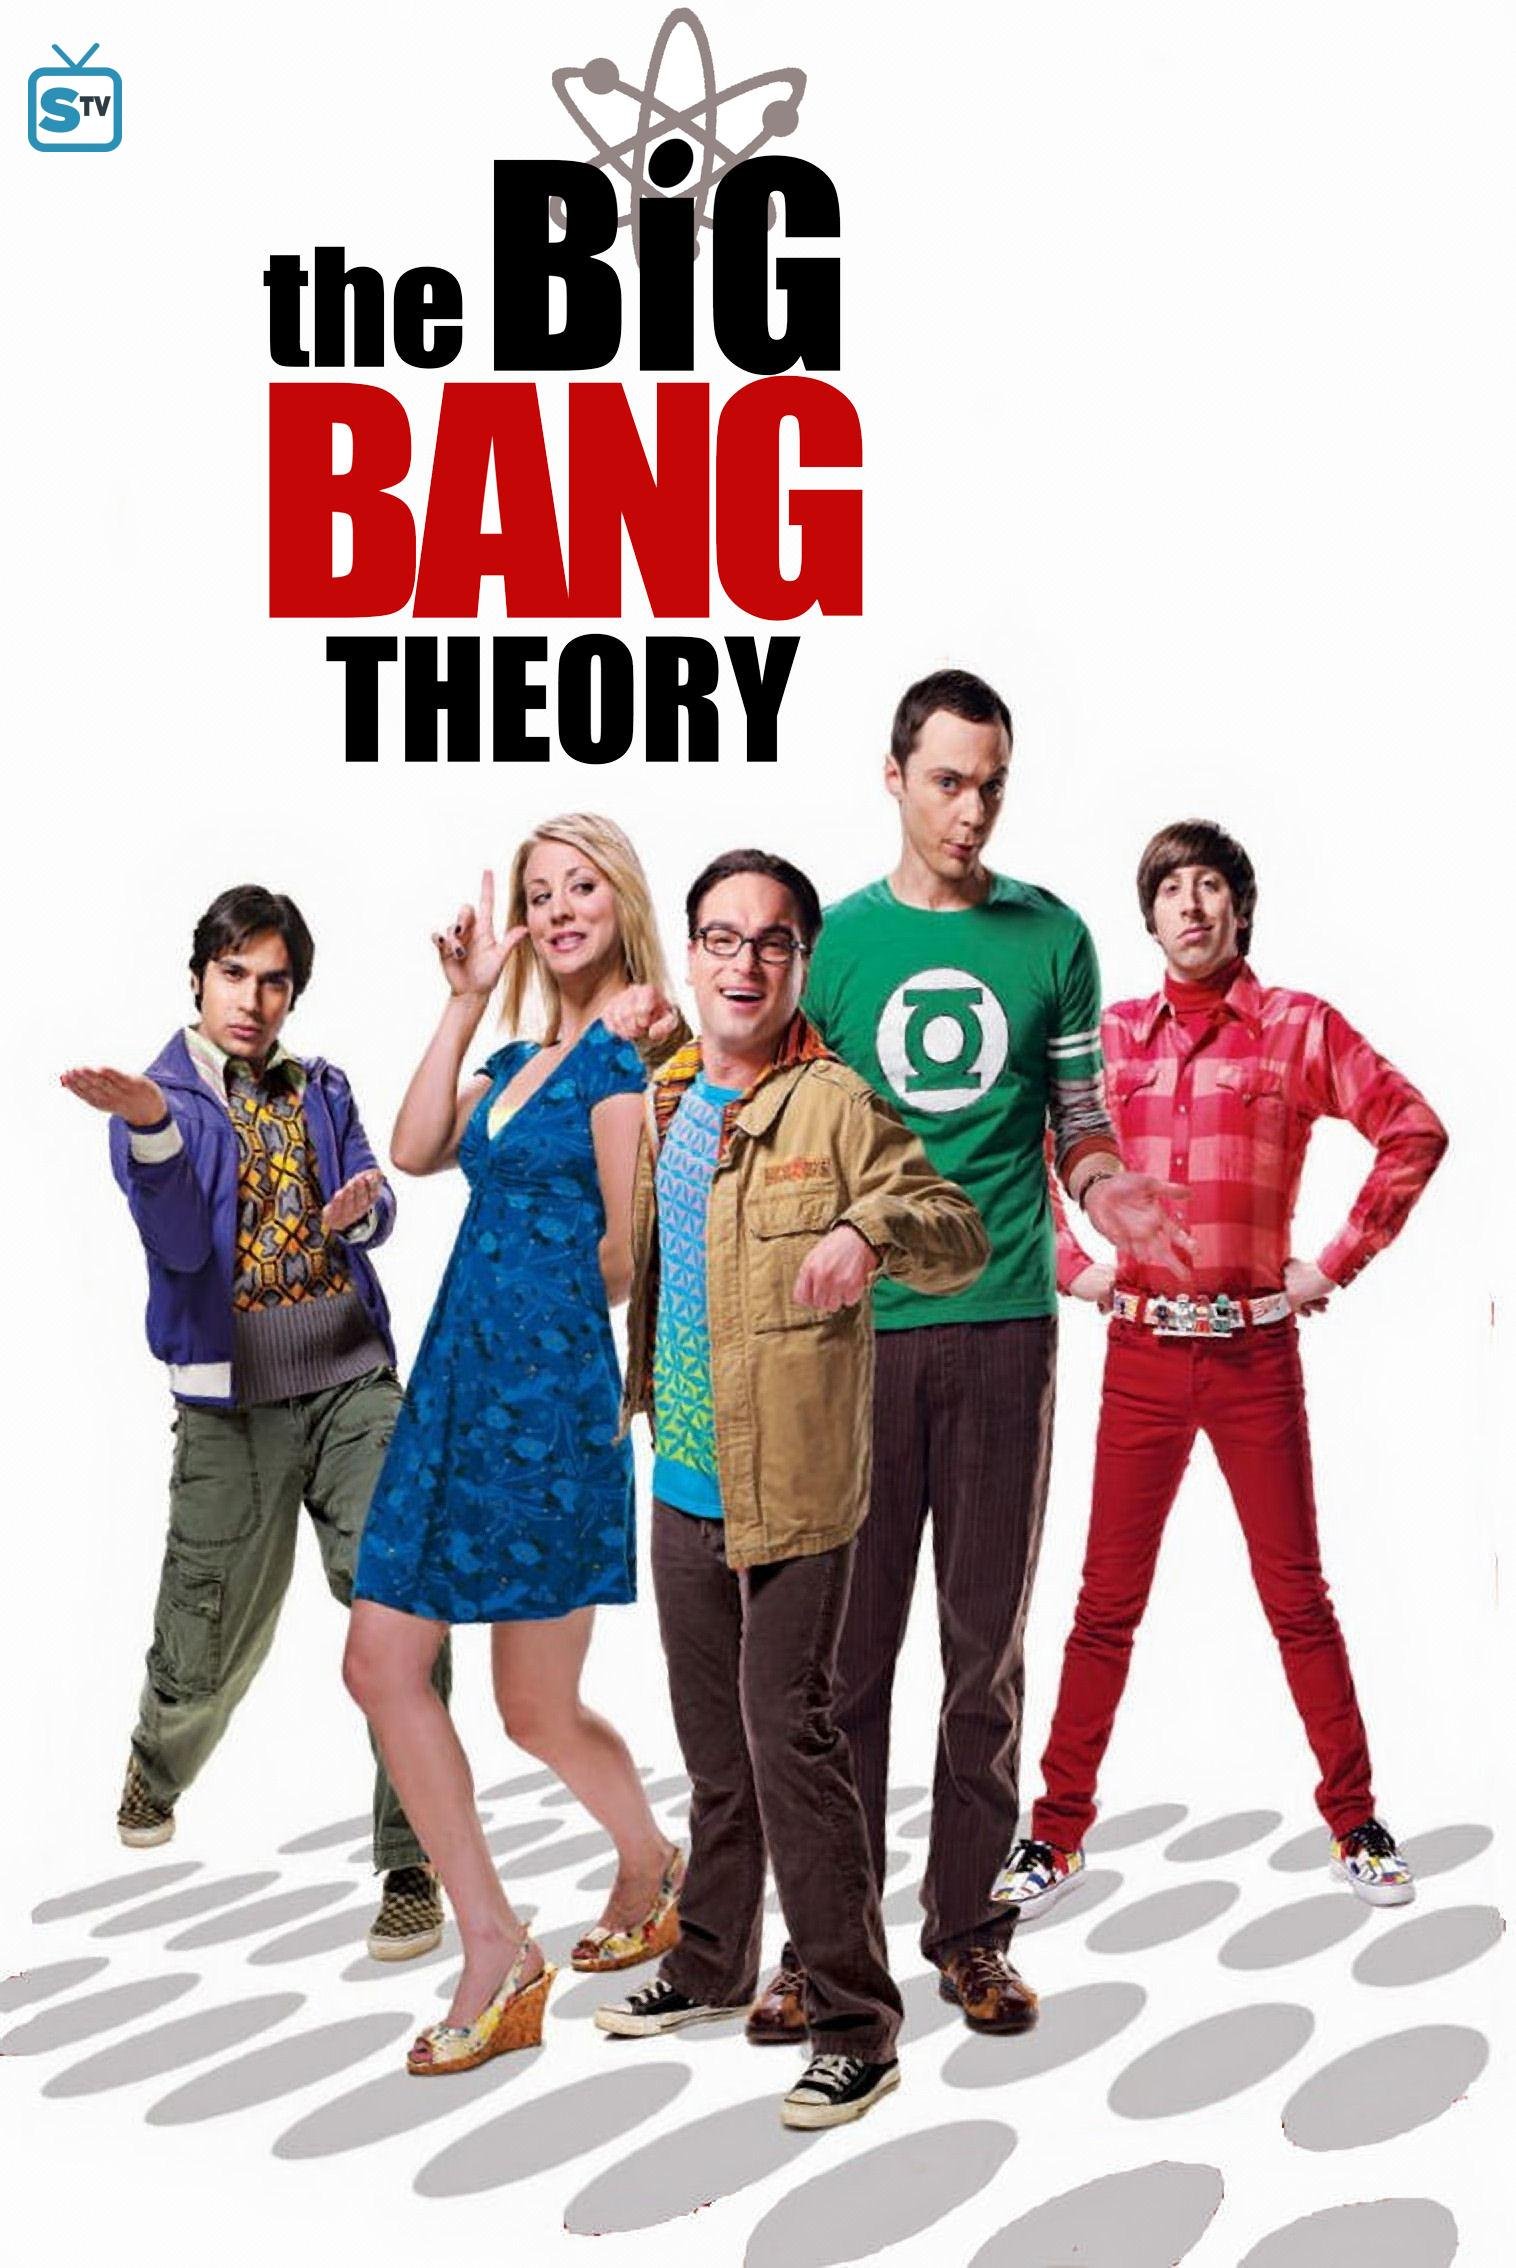 დიდი აფეთქების თეორია სეზონი 4 / The Big Bang Theory Season 4 ქართულად